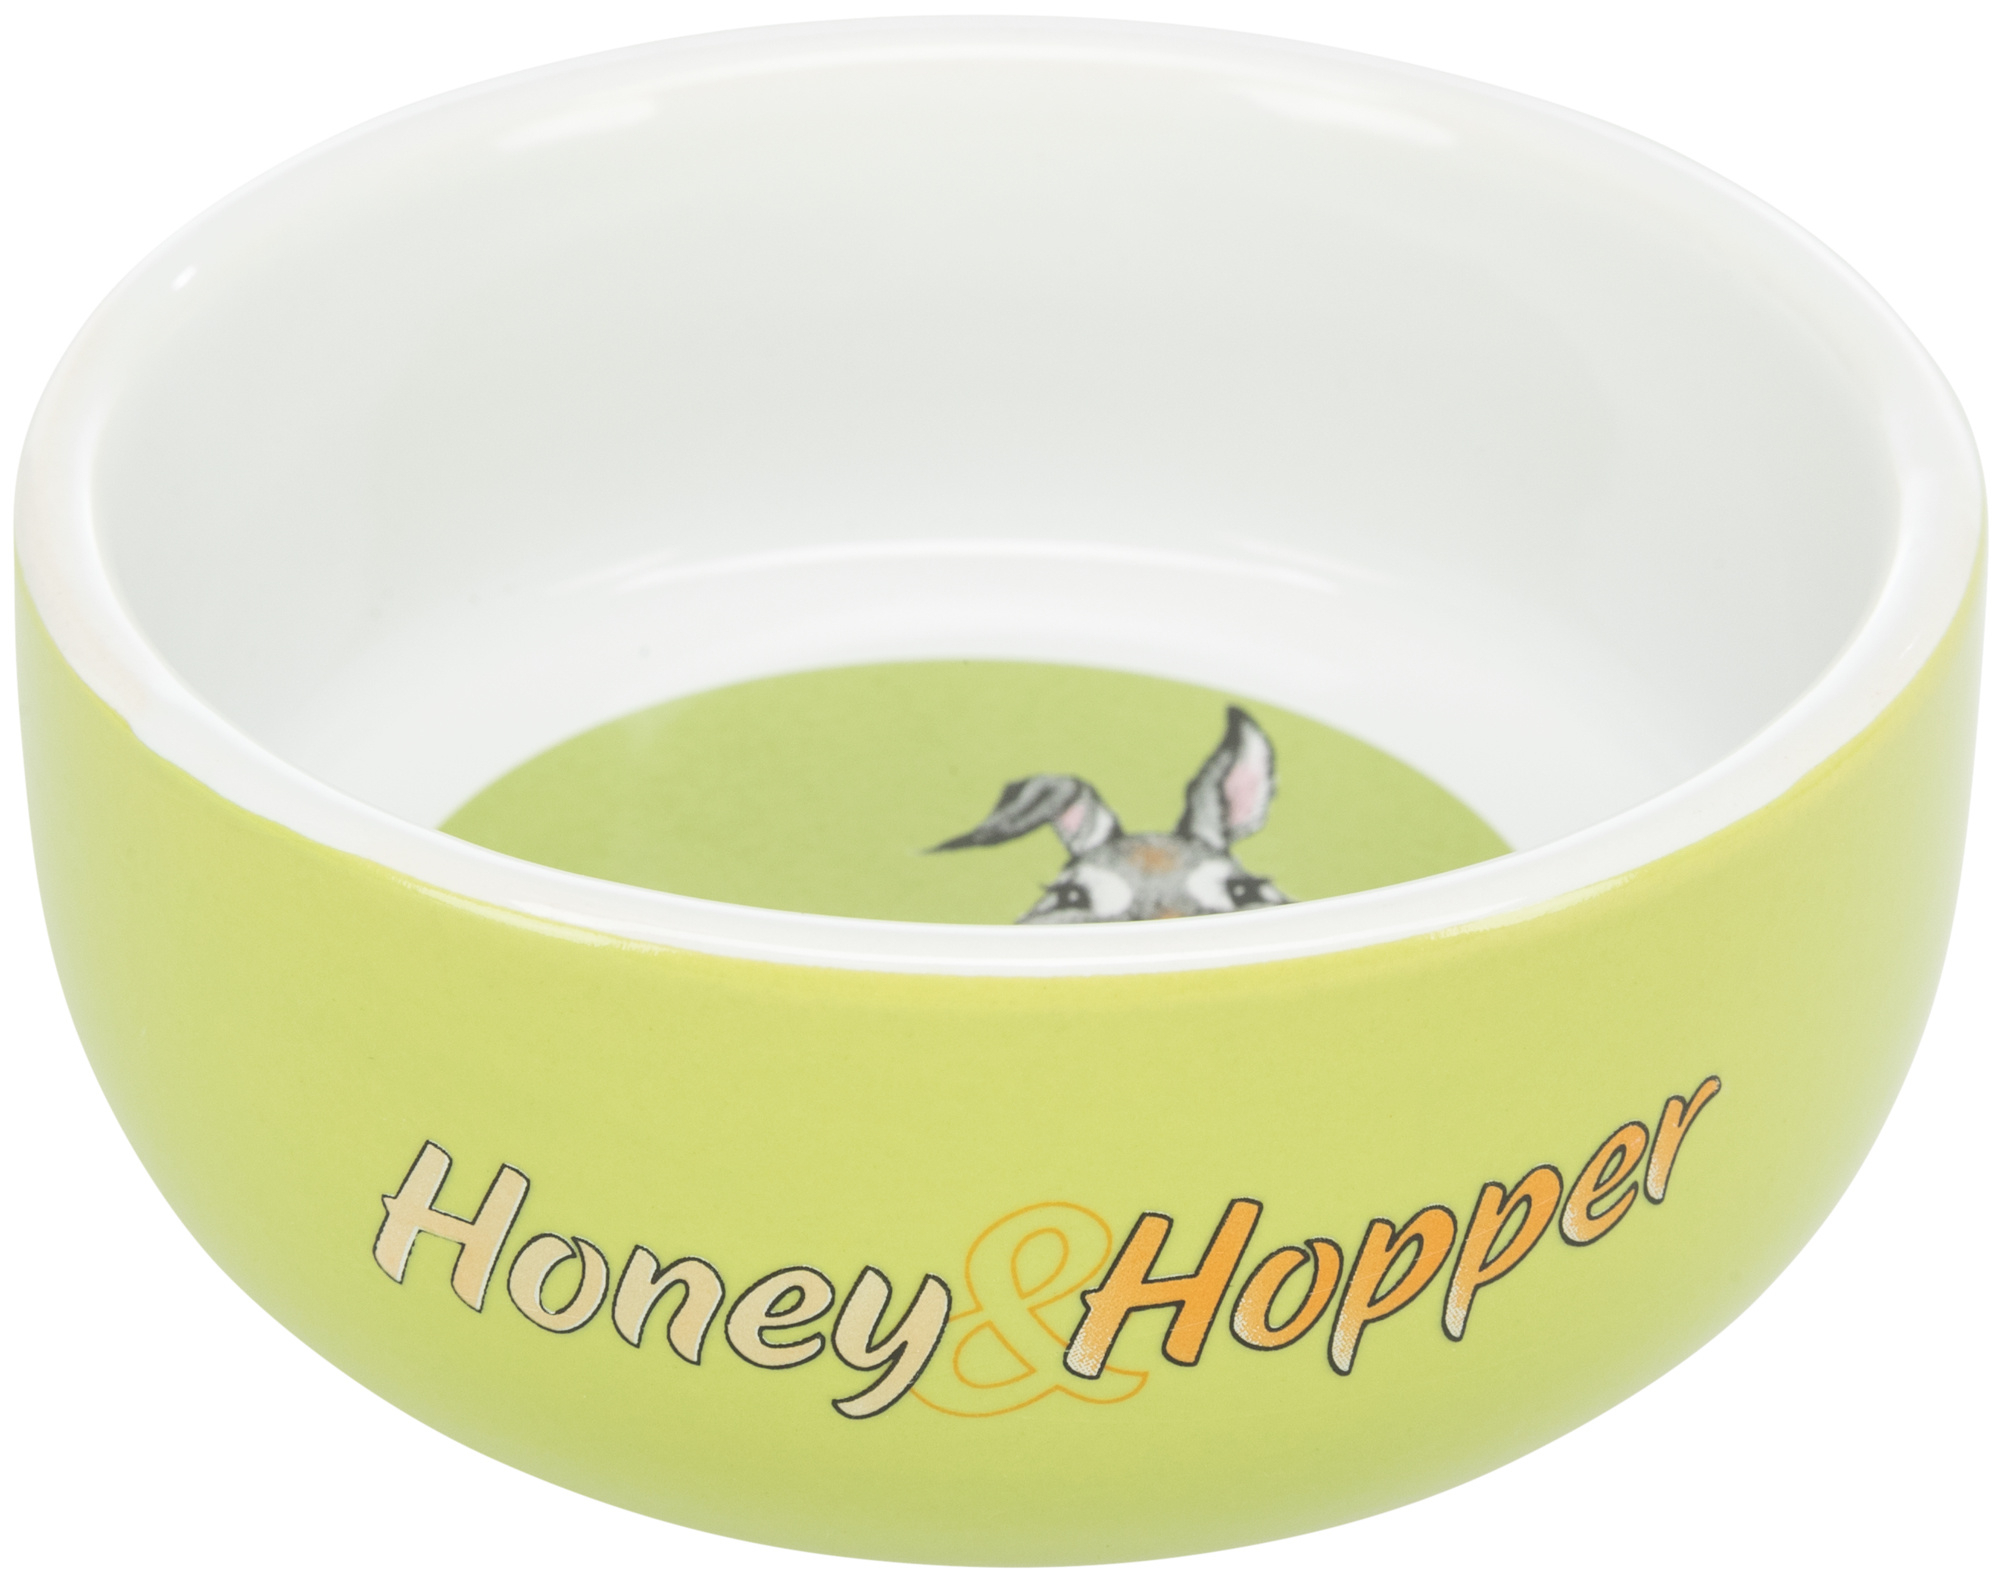 Honey & Hopper Comedero de cerámica 